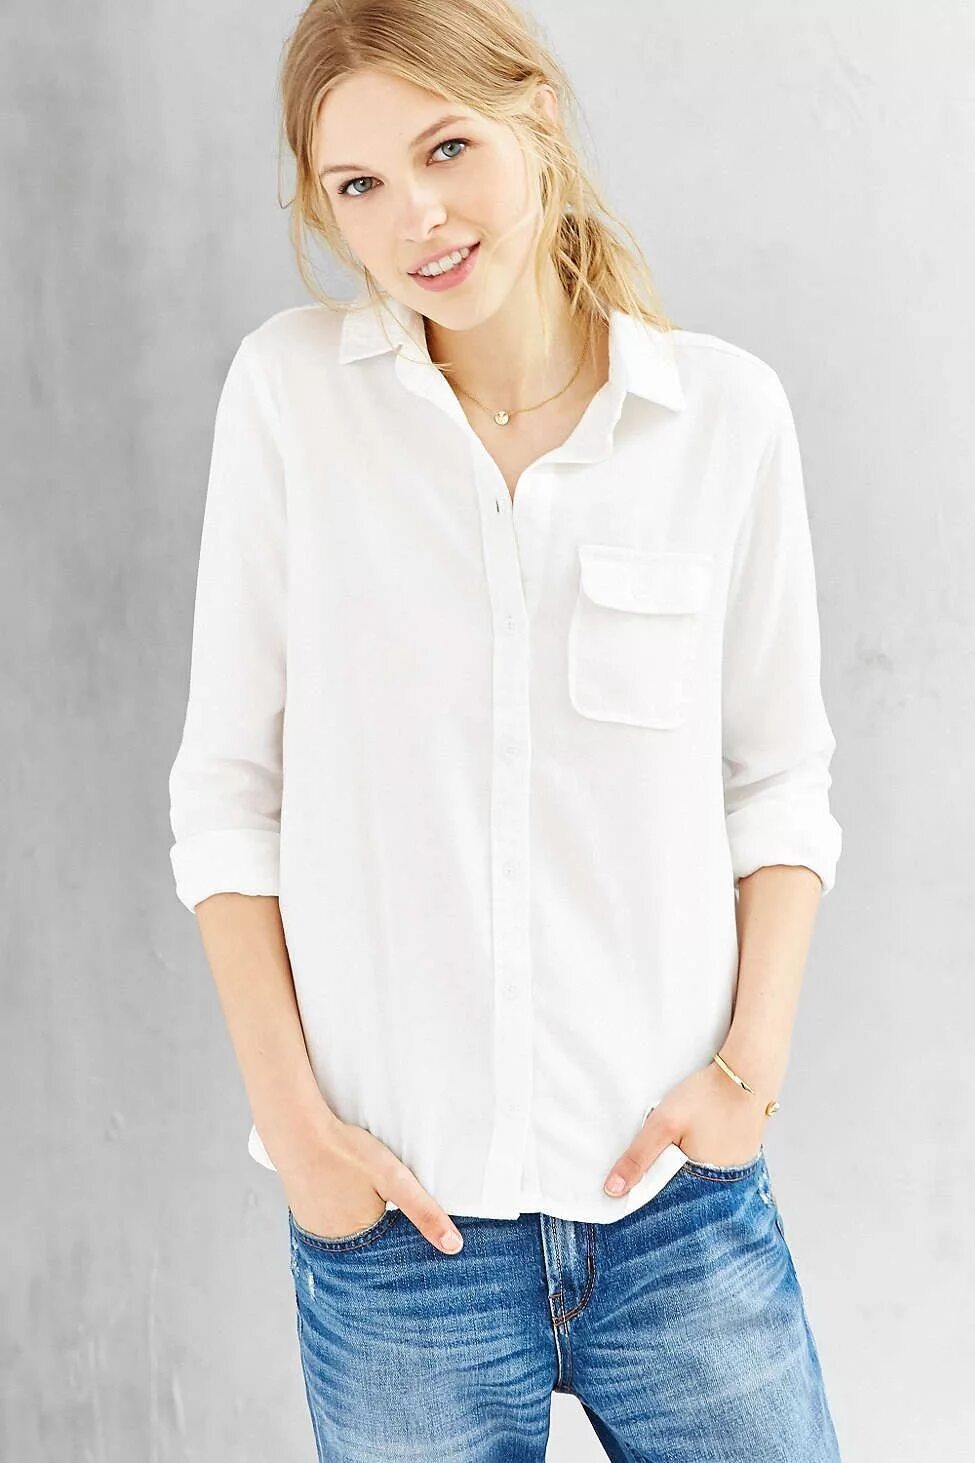 Рубашки Urban Outfitters. Женская рубашка Urban. Белая рубашка и топ под ней. Нежная белая рубашка.